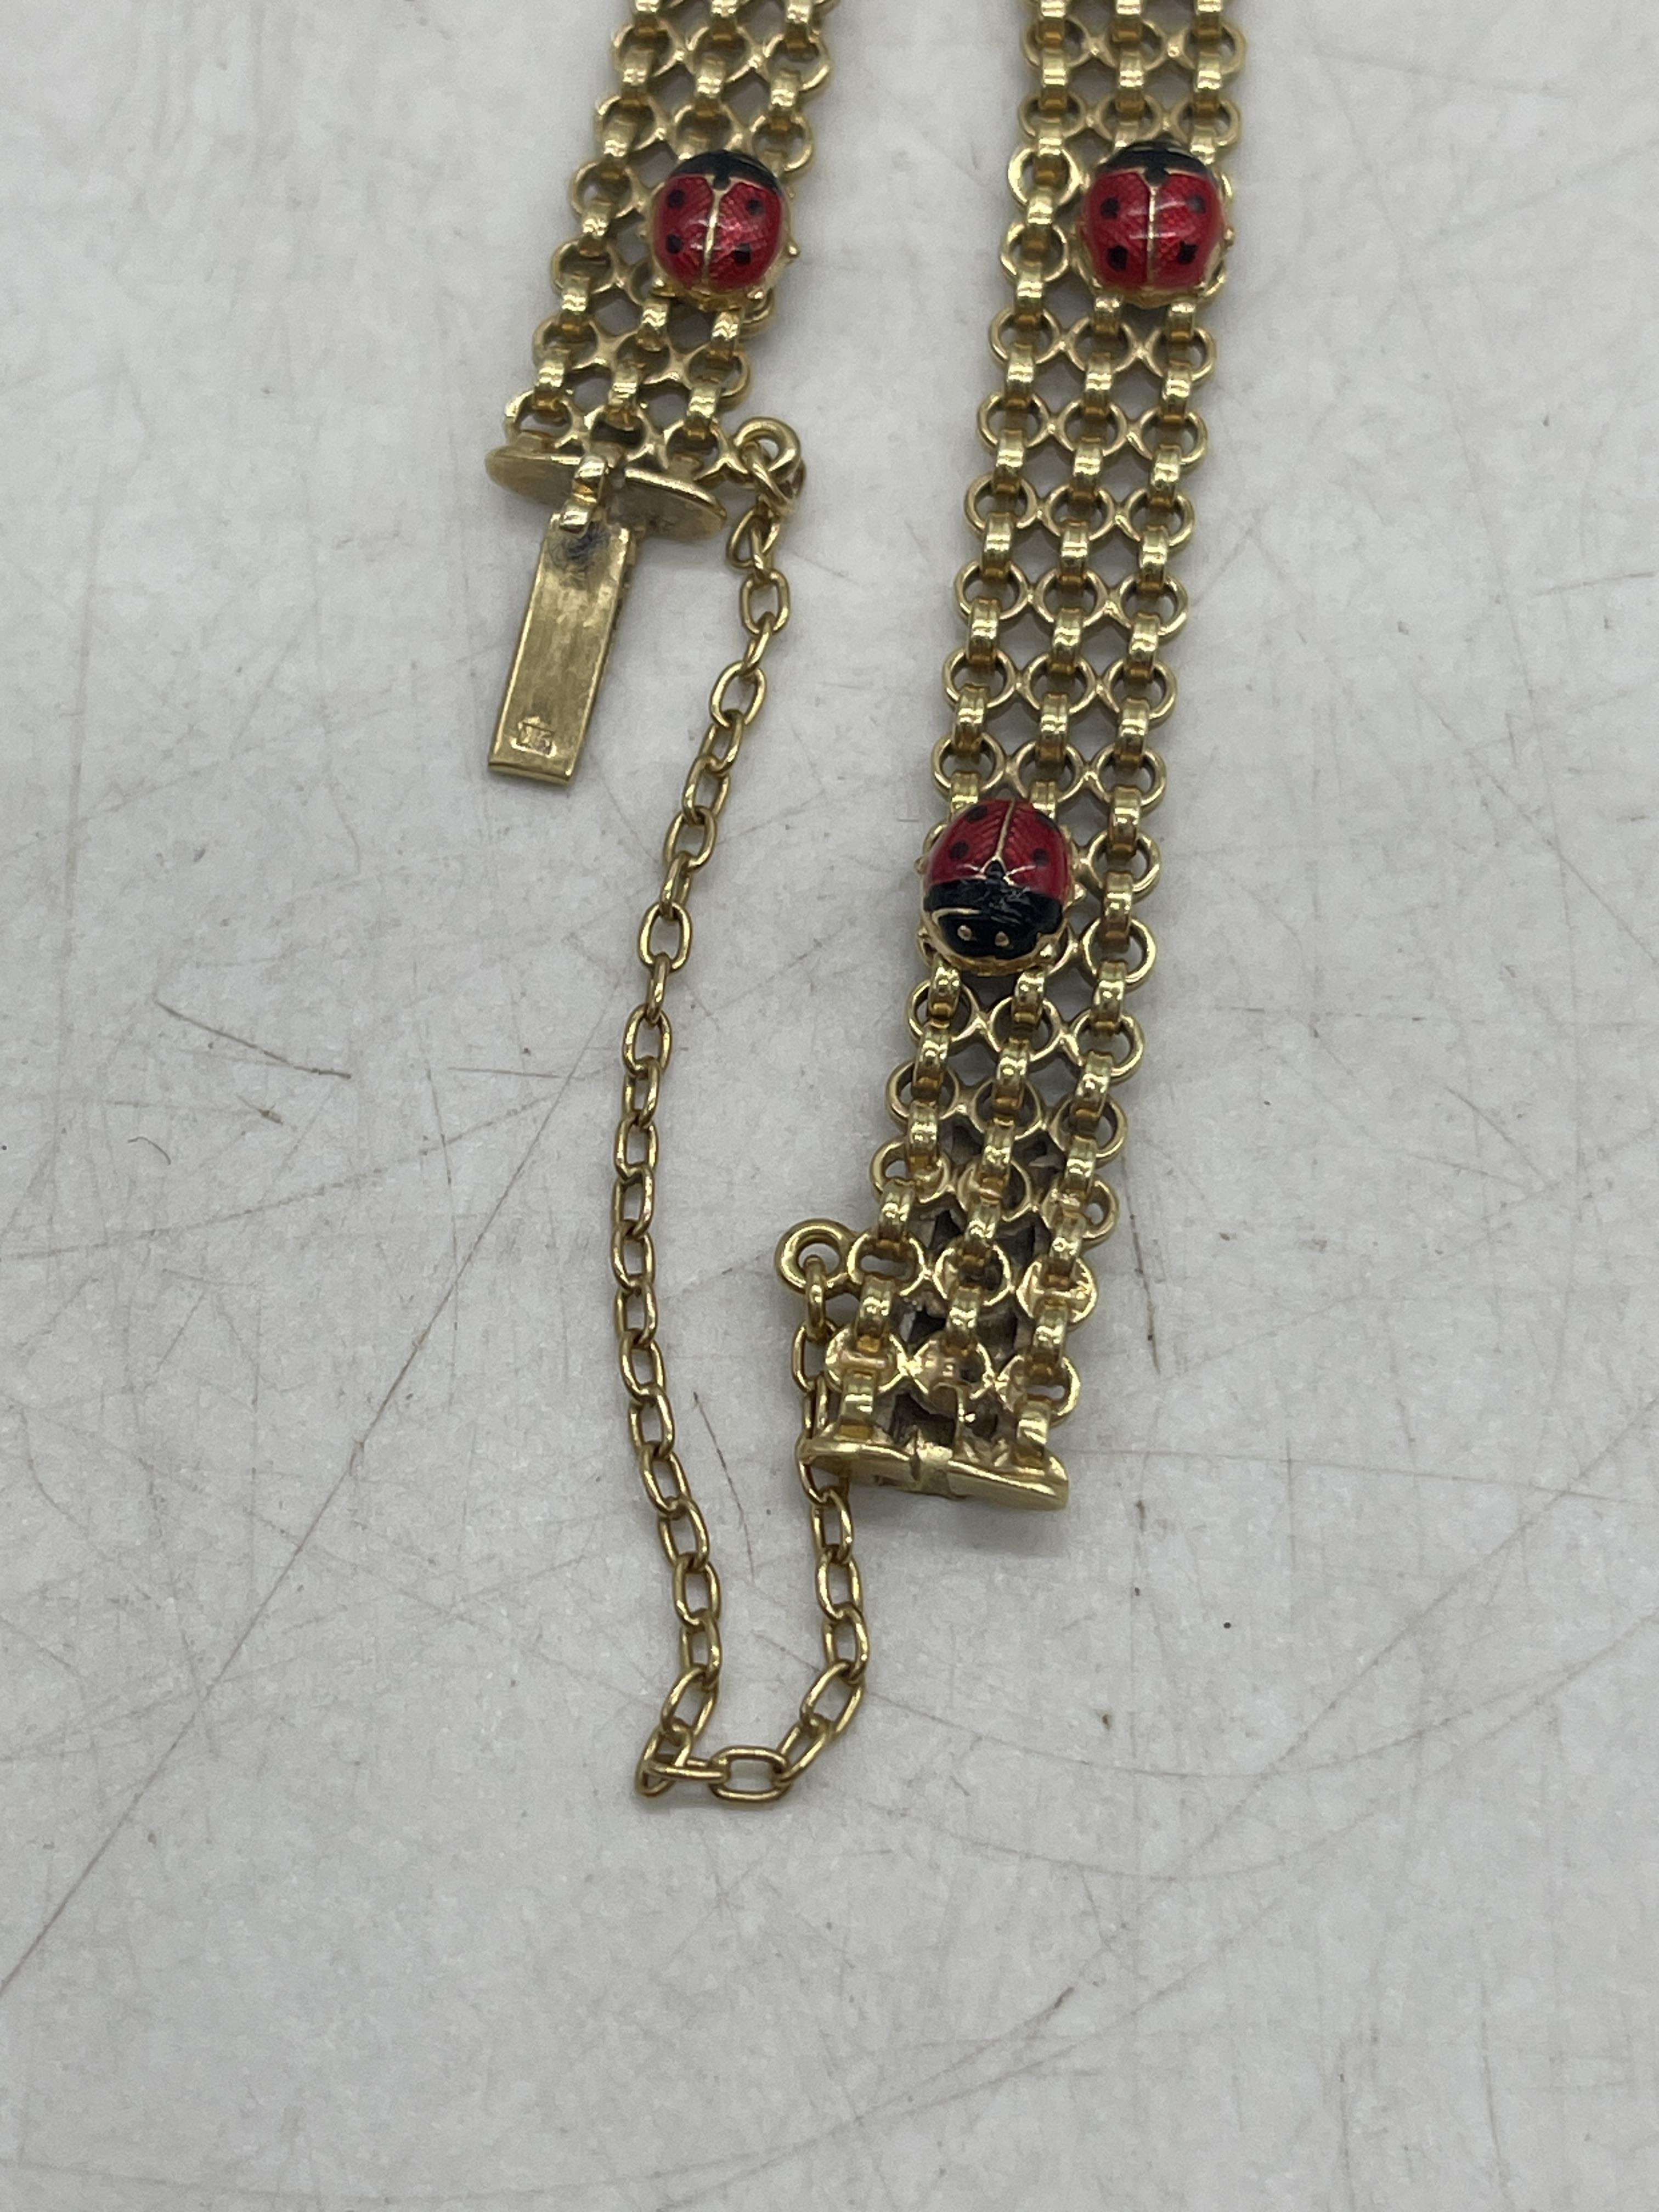 9ct Gold Ladybug Bracelet. - Image 5 of 6